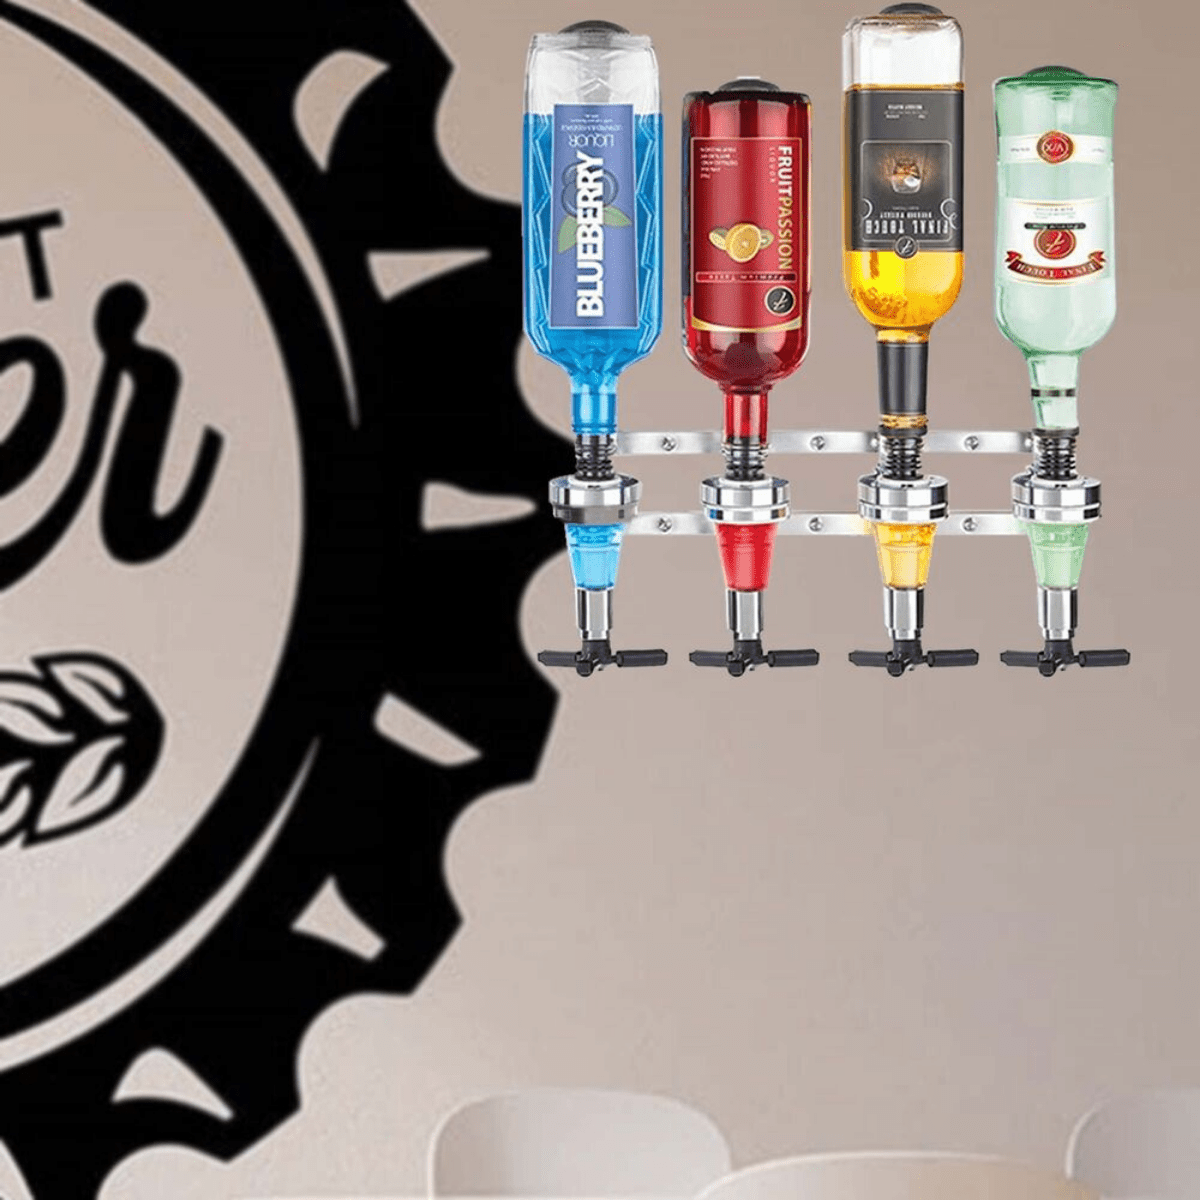 Final Touch 4-Bottle Wall Mounted Liquor Dispenser